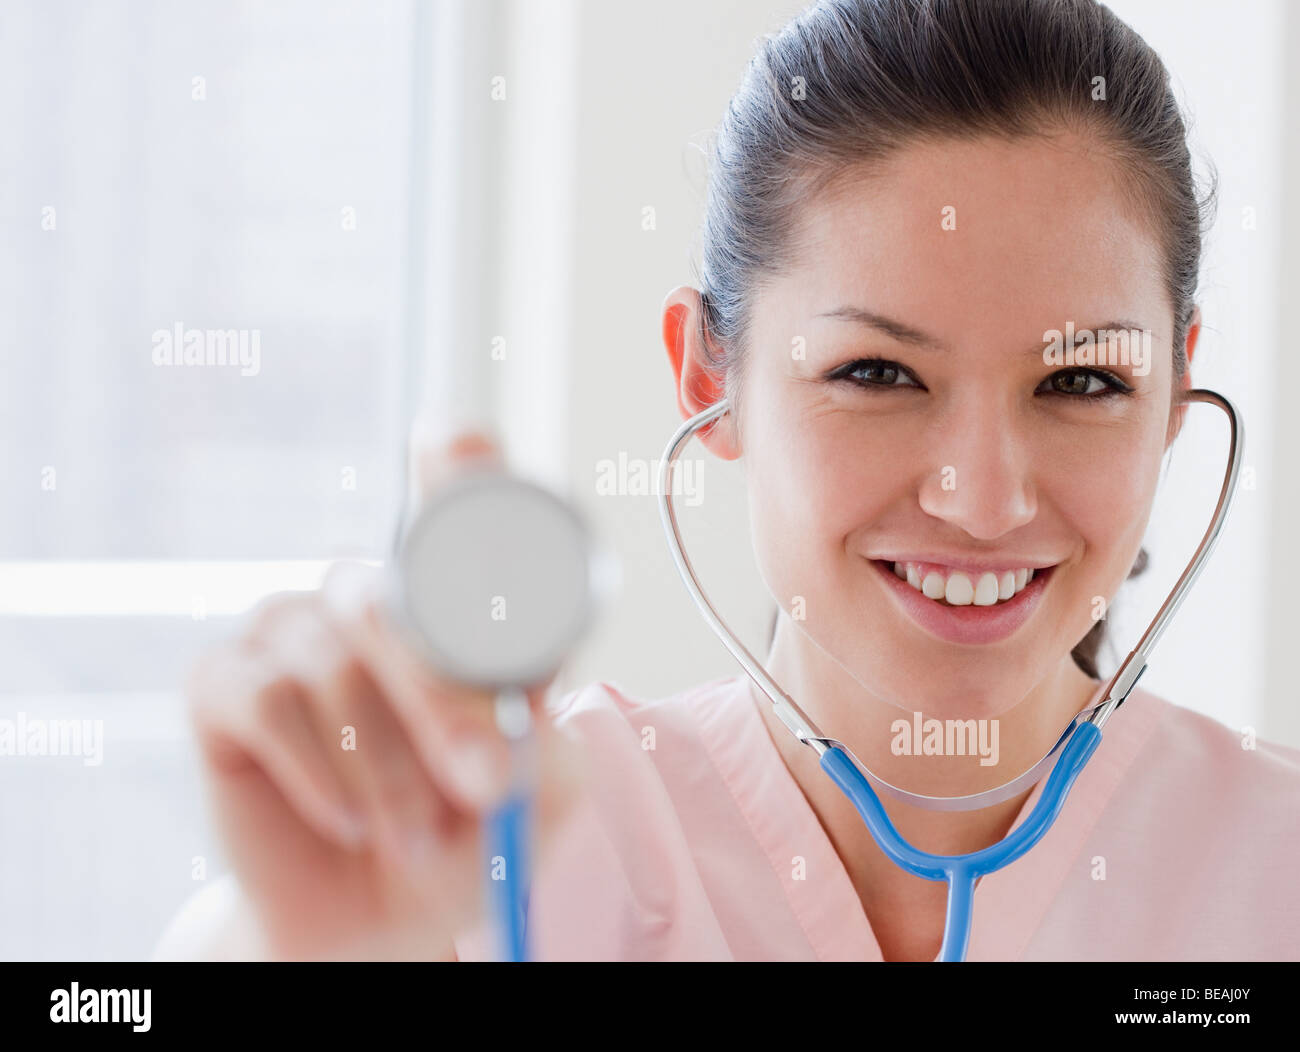 Mixed race nurse holding stethoscope Stock Photo